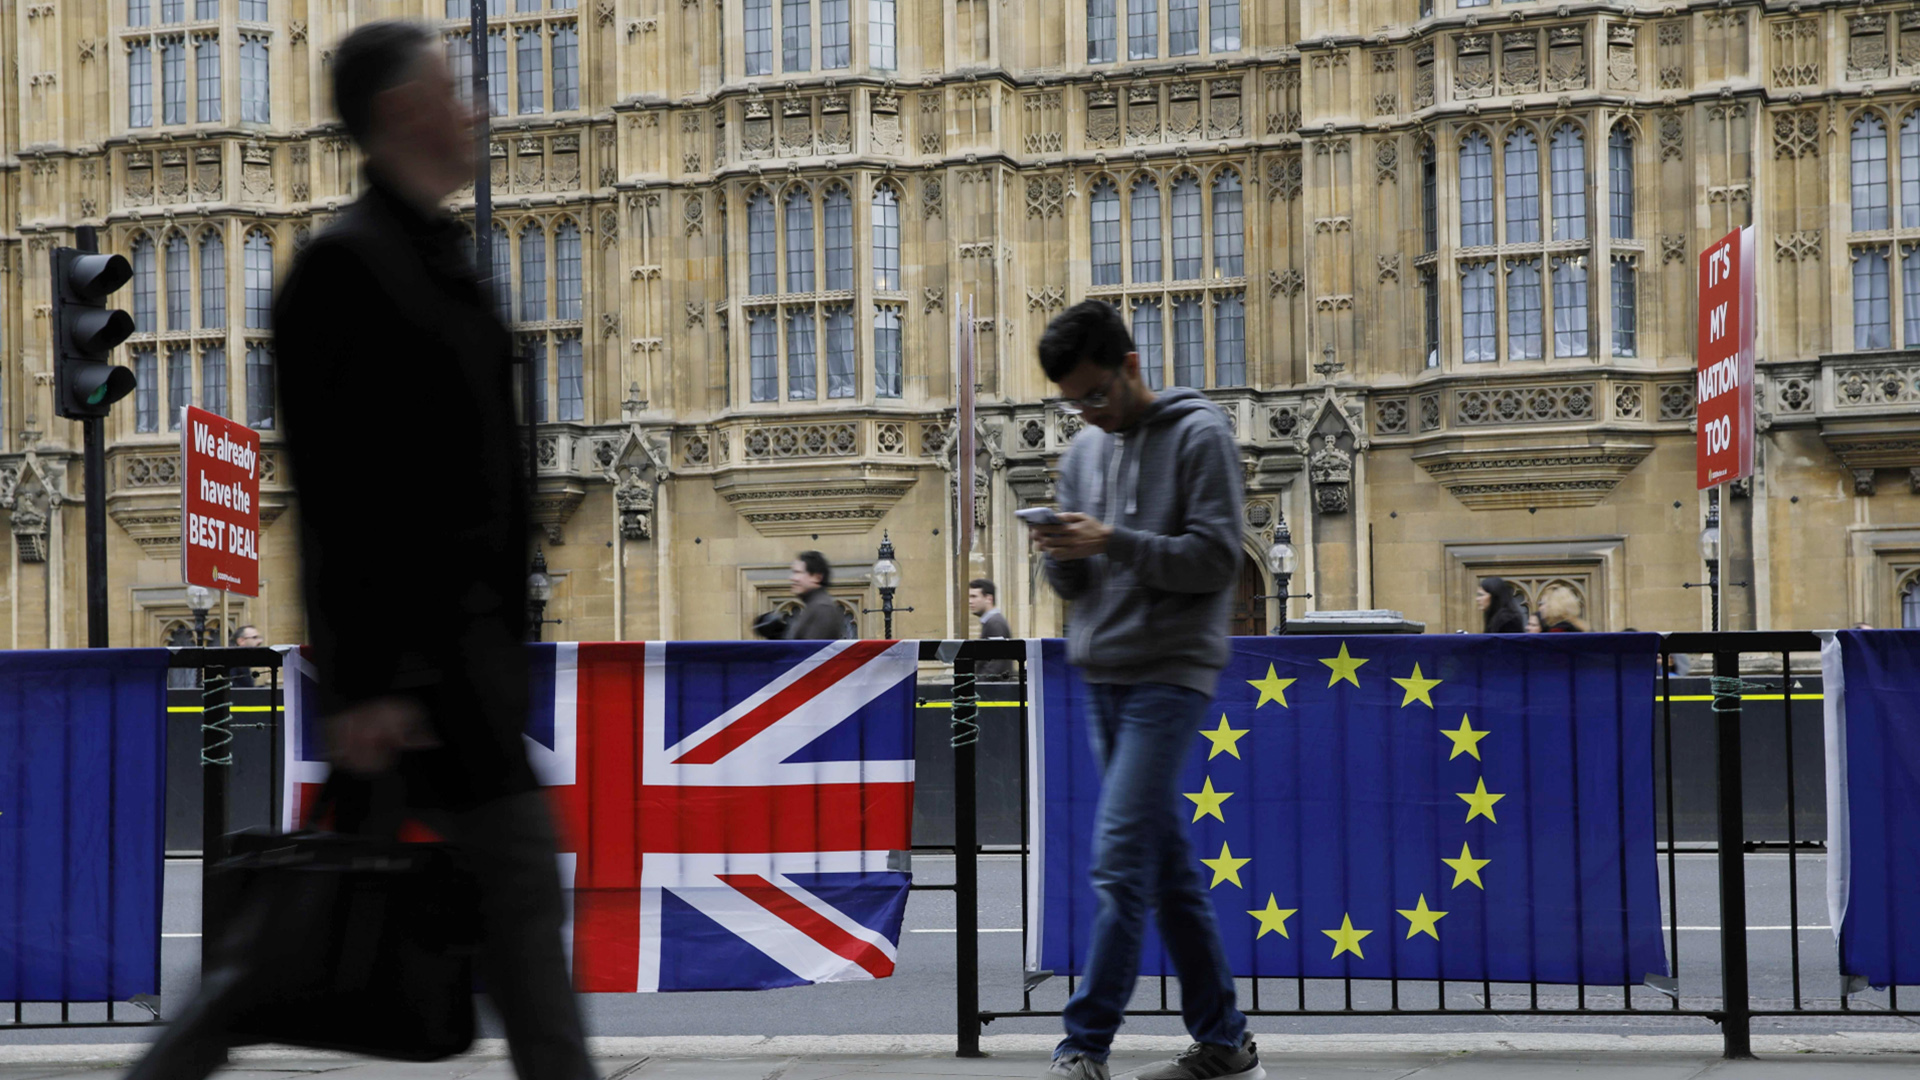 Passanten laufen an der britischen und europäischen Flagge vor dem britischen Parlament vorbei. | AFP